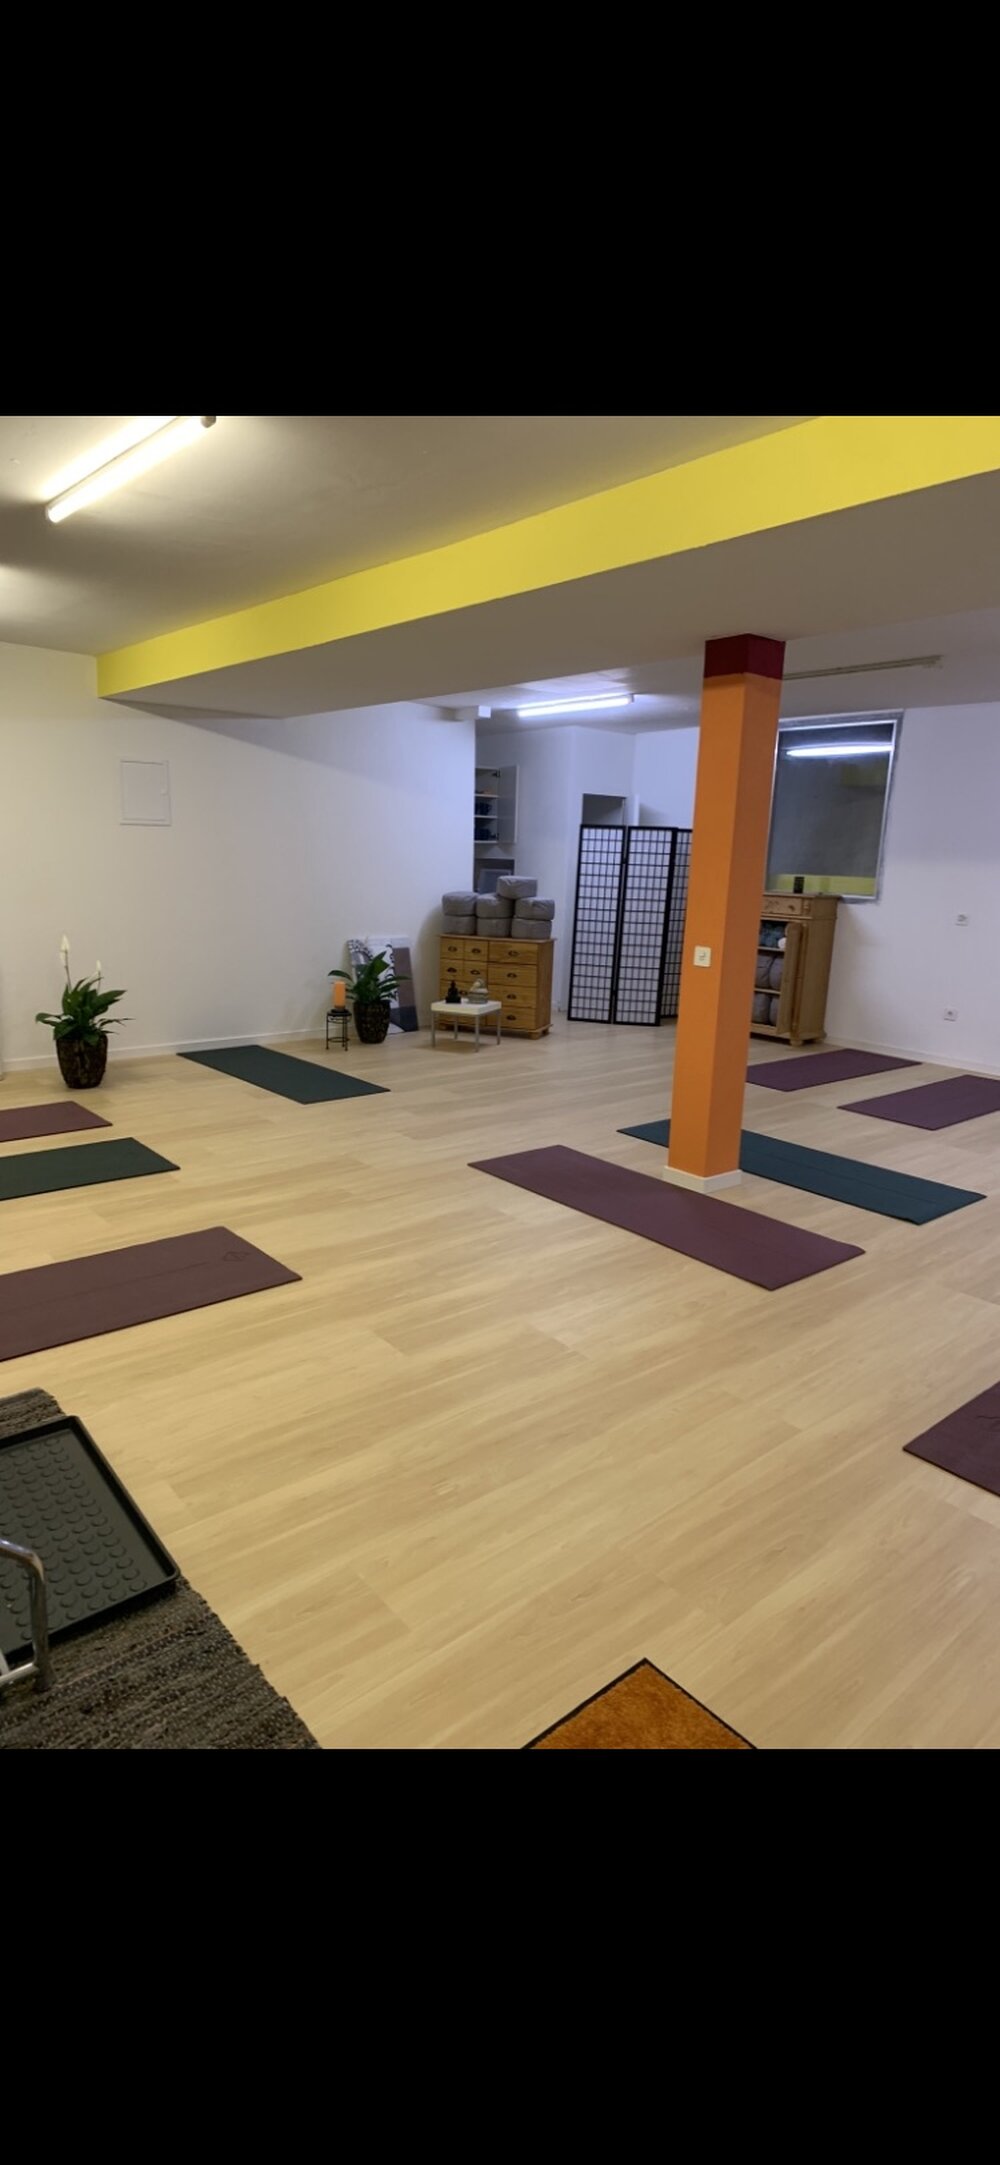 Yoga Raum zu vermieten
5 geh min Bahnhof Stadelhofen